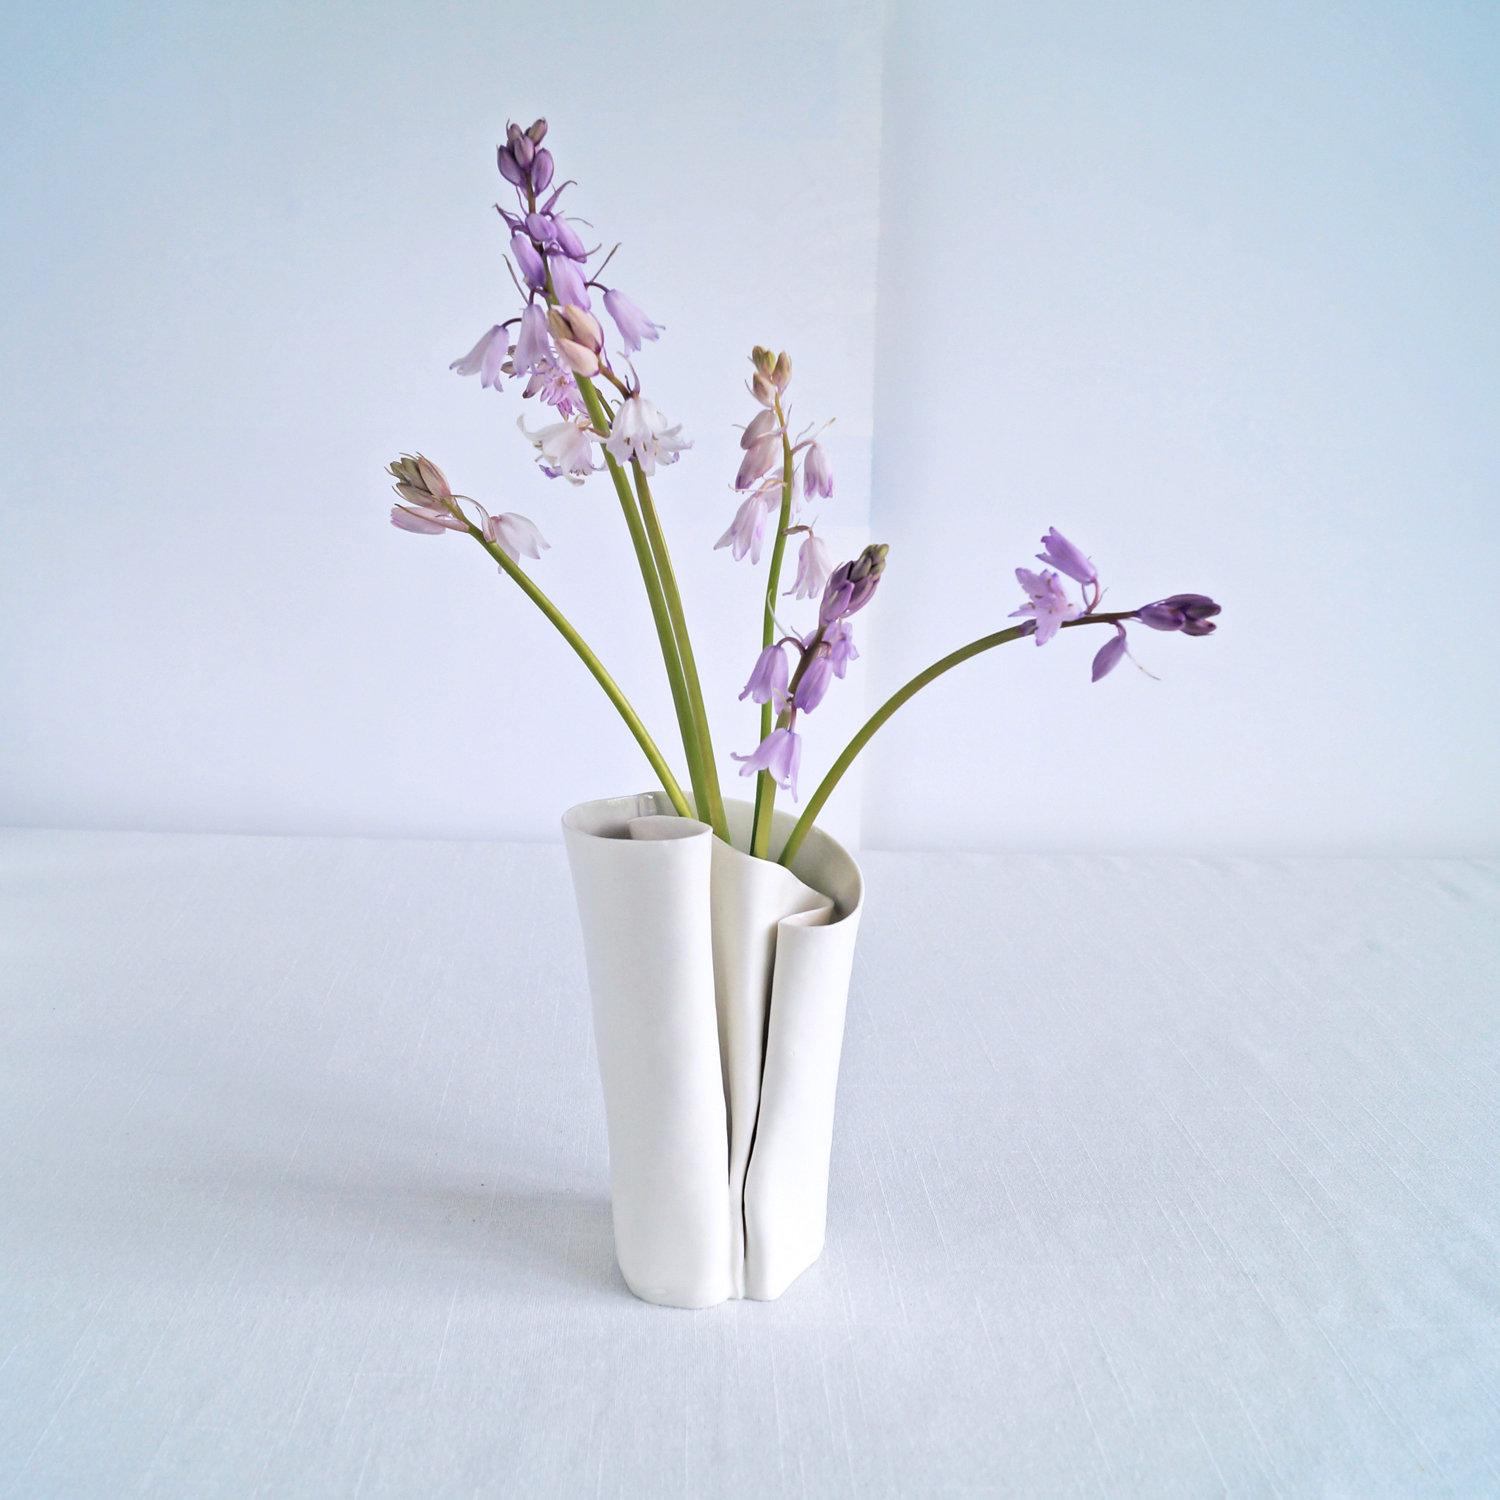 UNFOLDING No6, freeform porcelain vase, white grey ceramic glazes, Vanillakiln, art vase, artistic vase, hand made vase, free